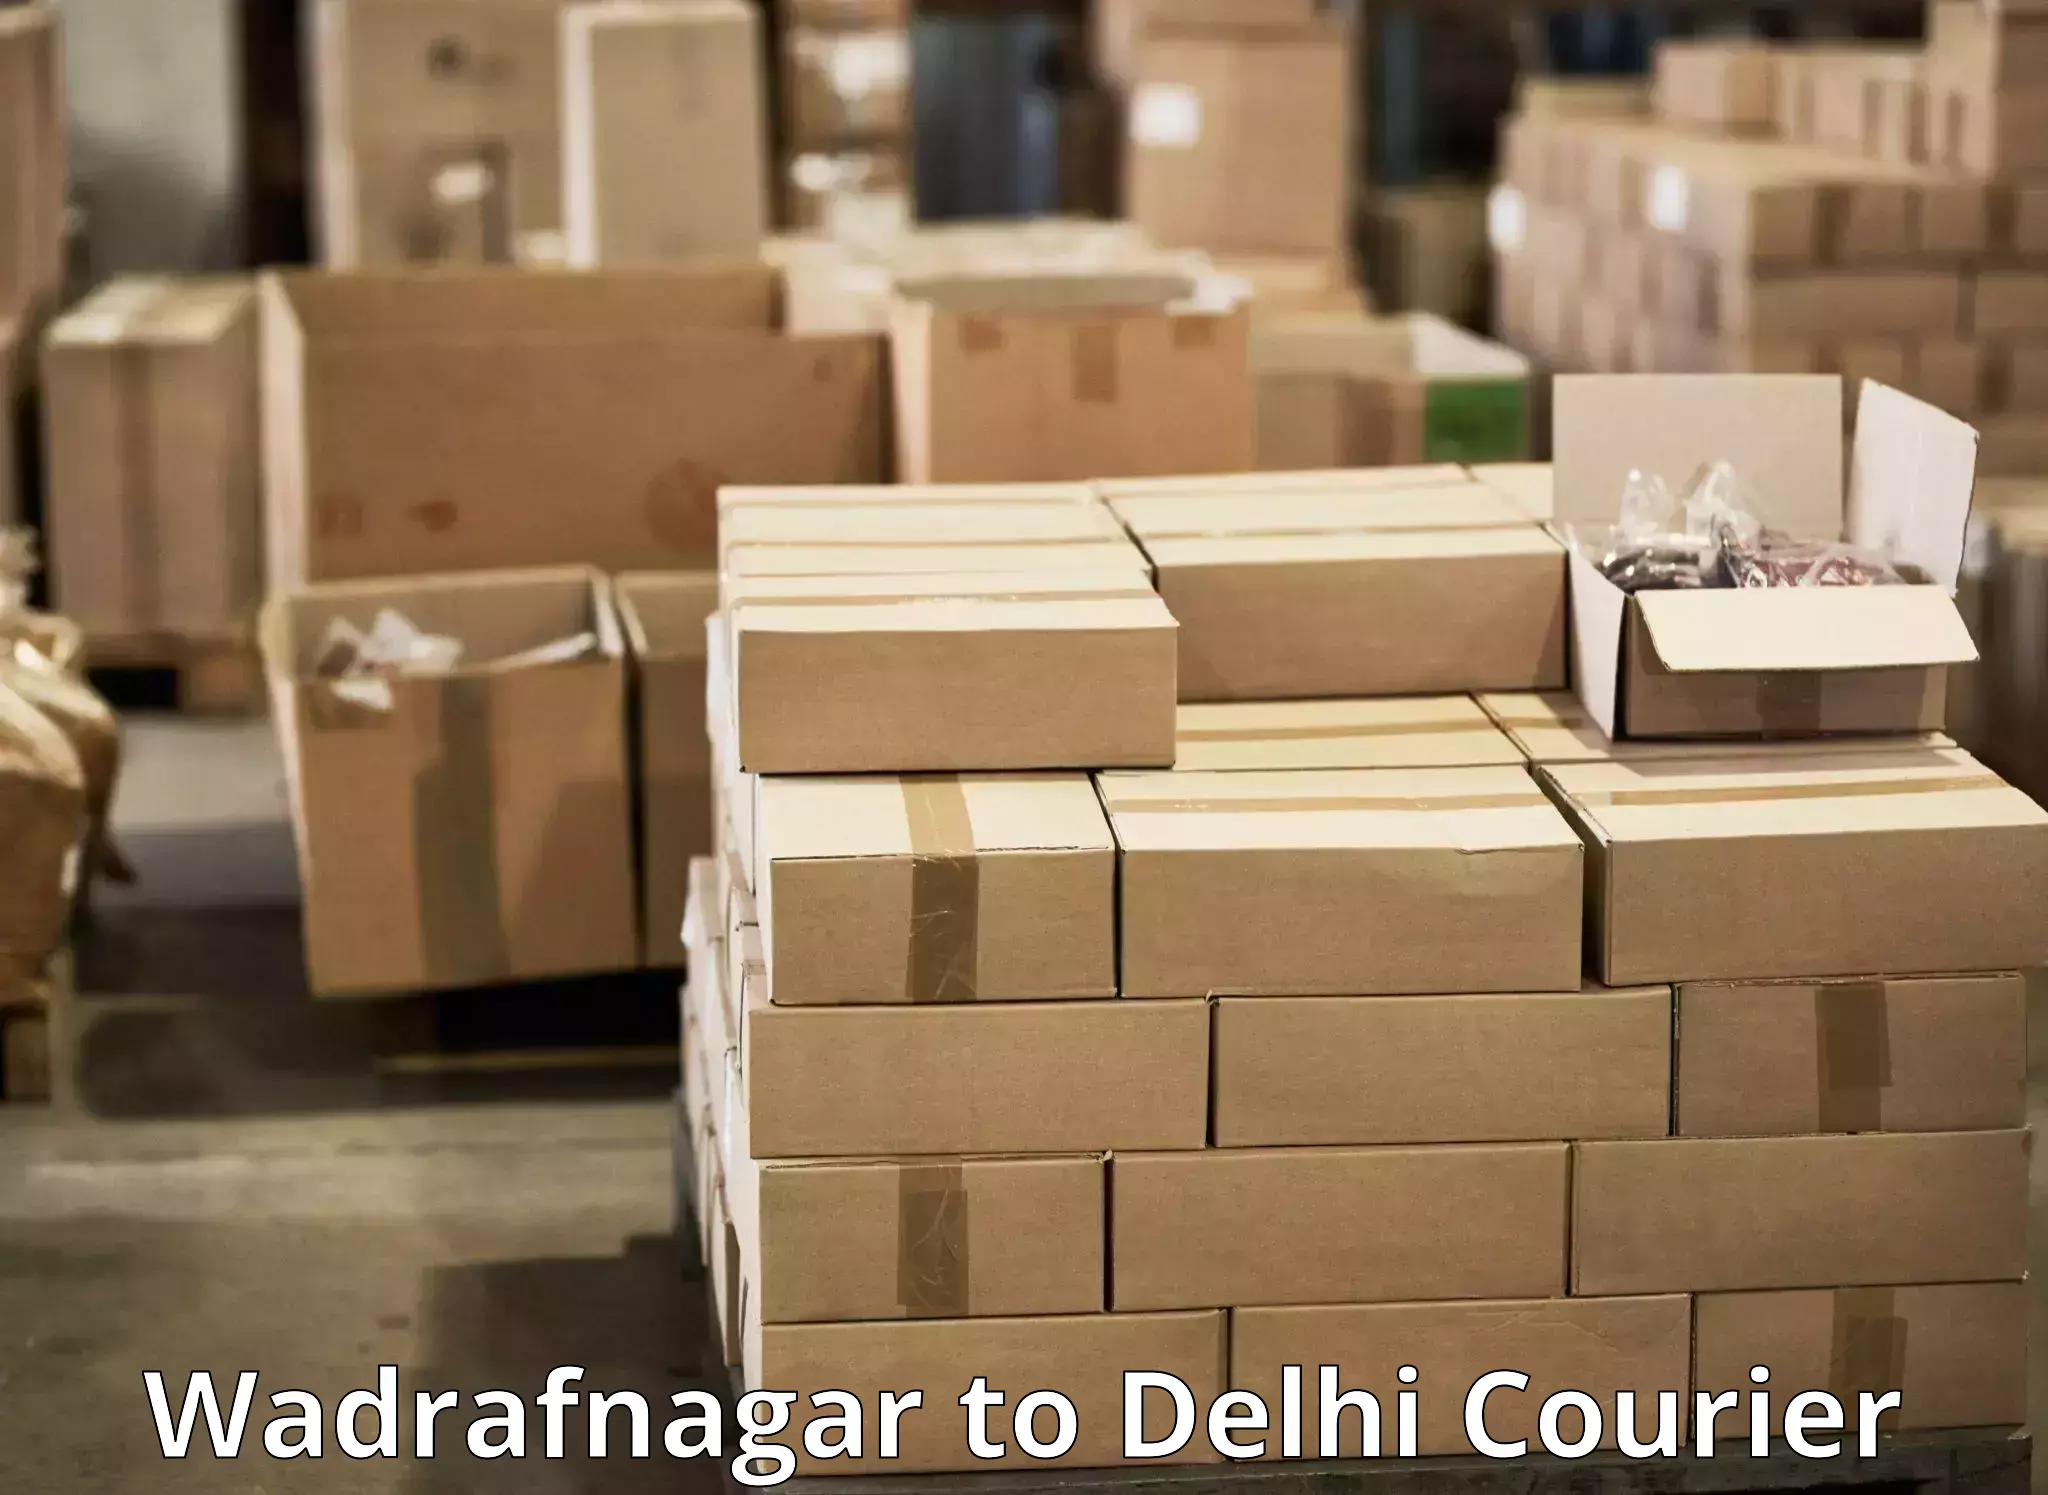 Ocean freight courier Wadrafnagar to Krishna Nagar